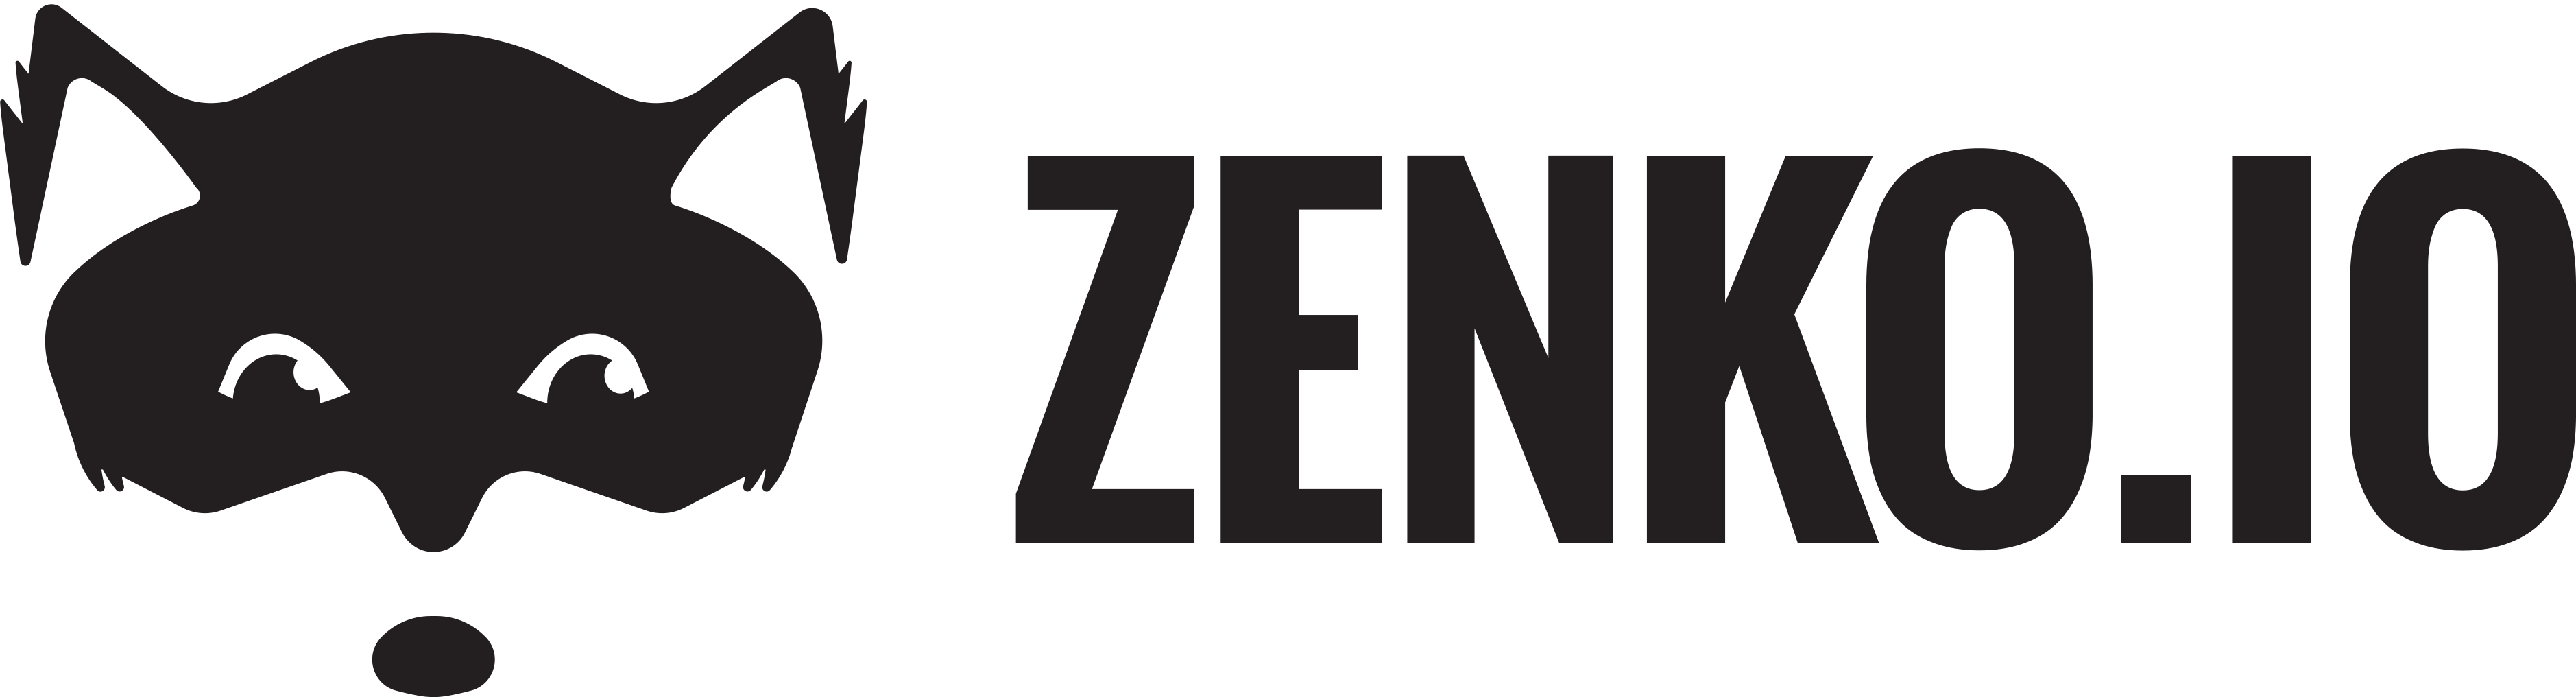 Zenko logo